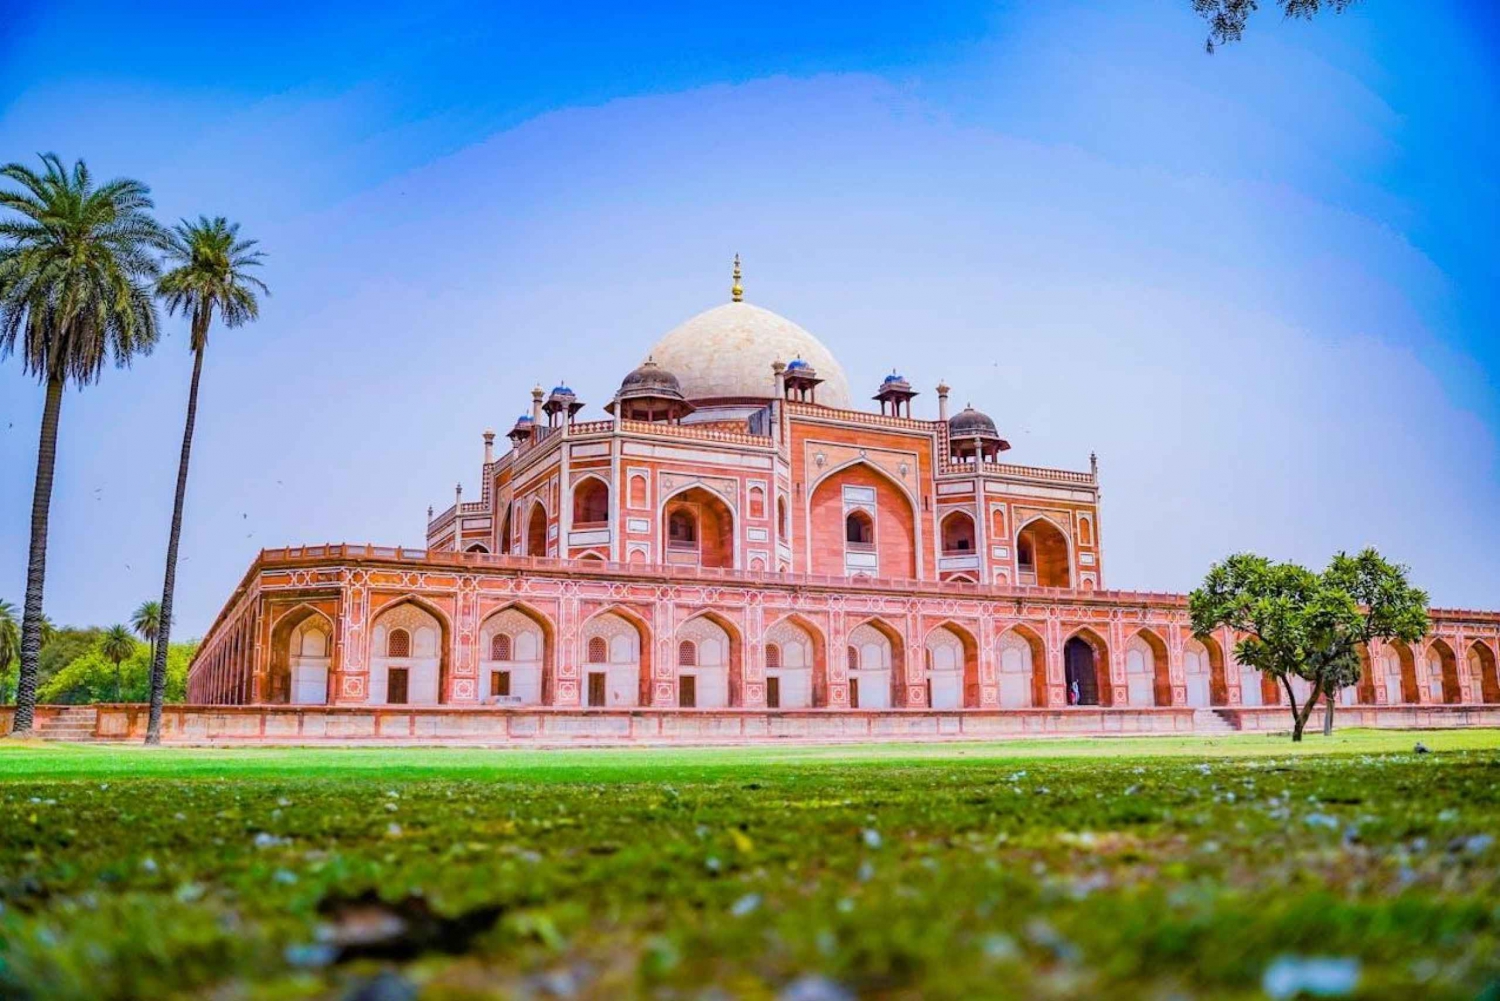 De Délhi: Excursão de 4 dias ao Triângulo Dourado com Agra e Jaipur